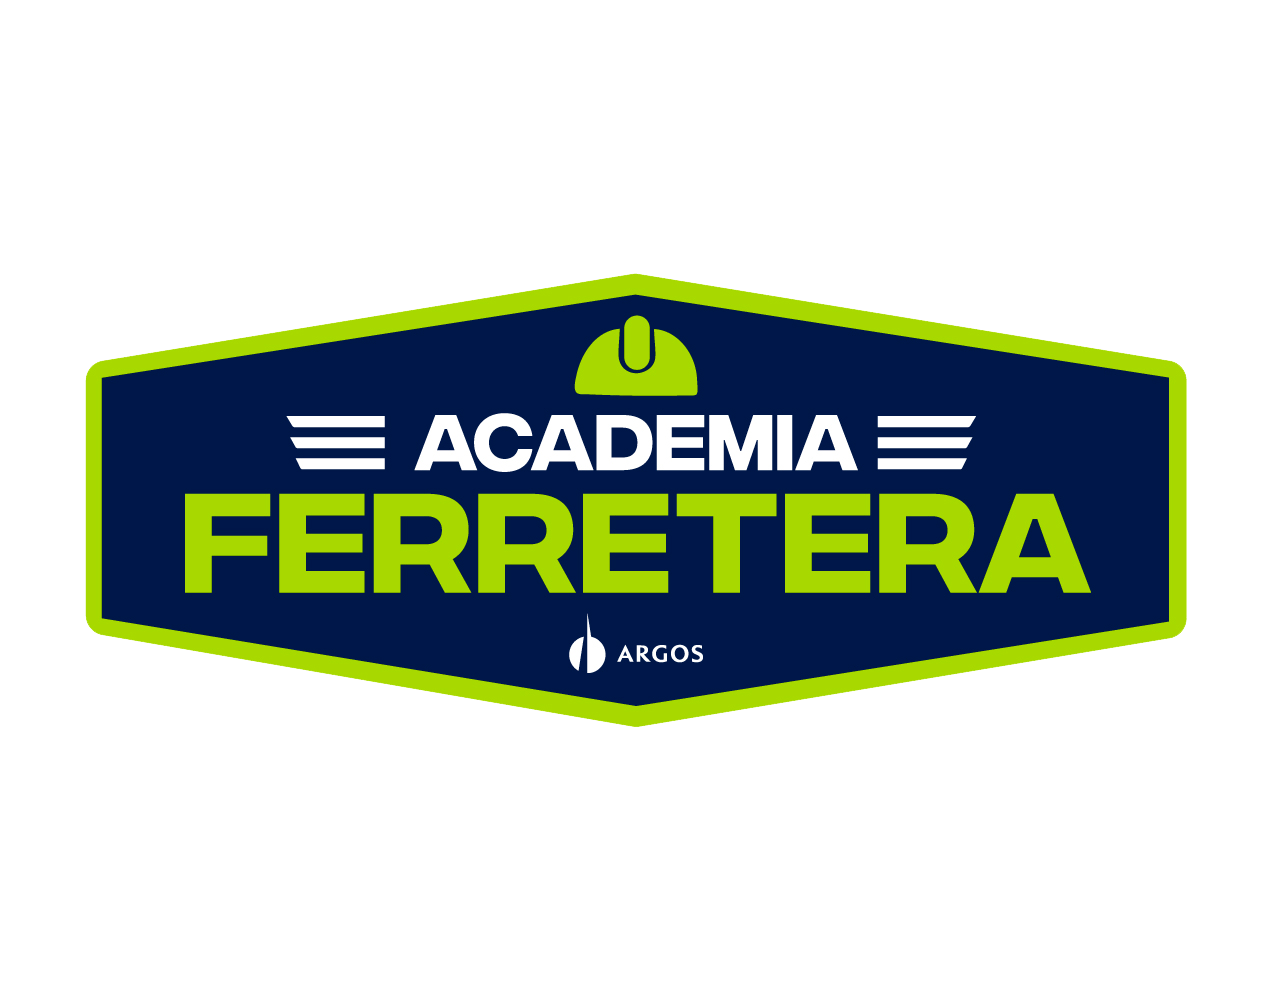  Academia Ferretera: Almacenamiento y Manejo de Inventarios de Cemento